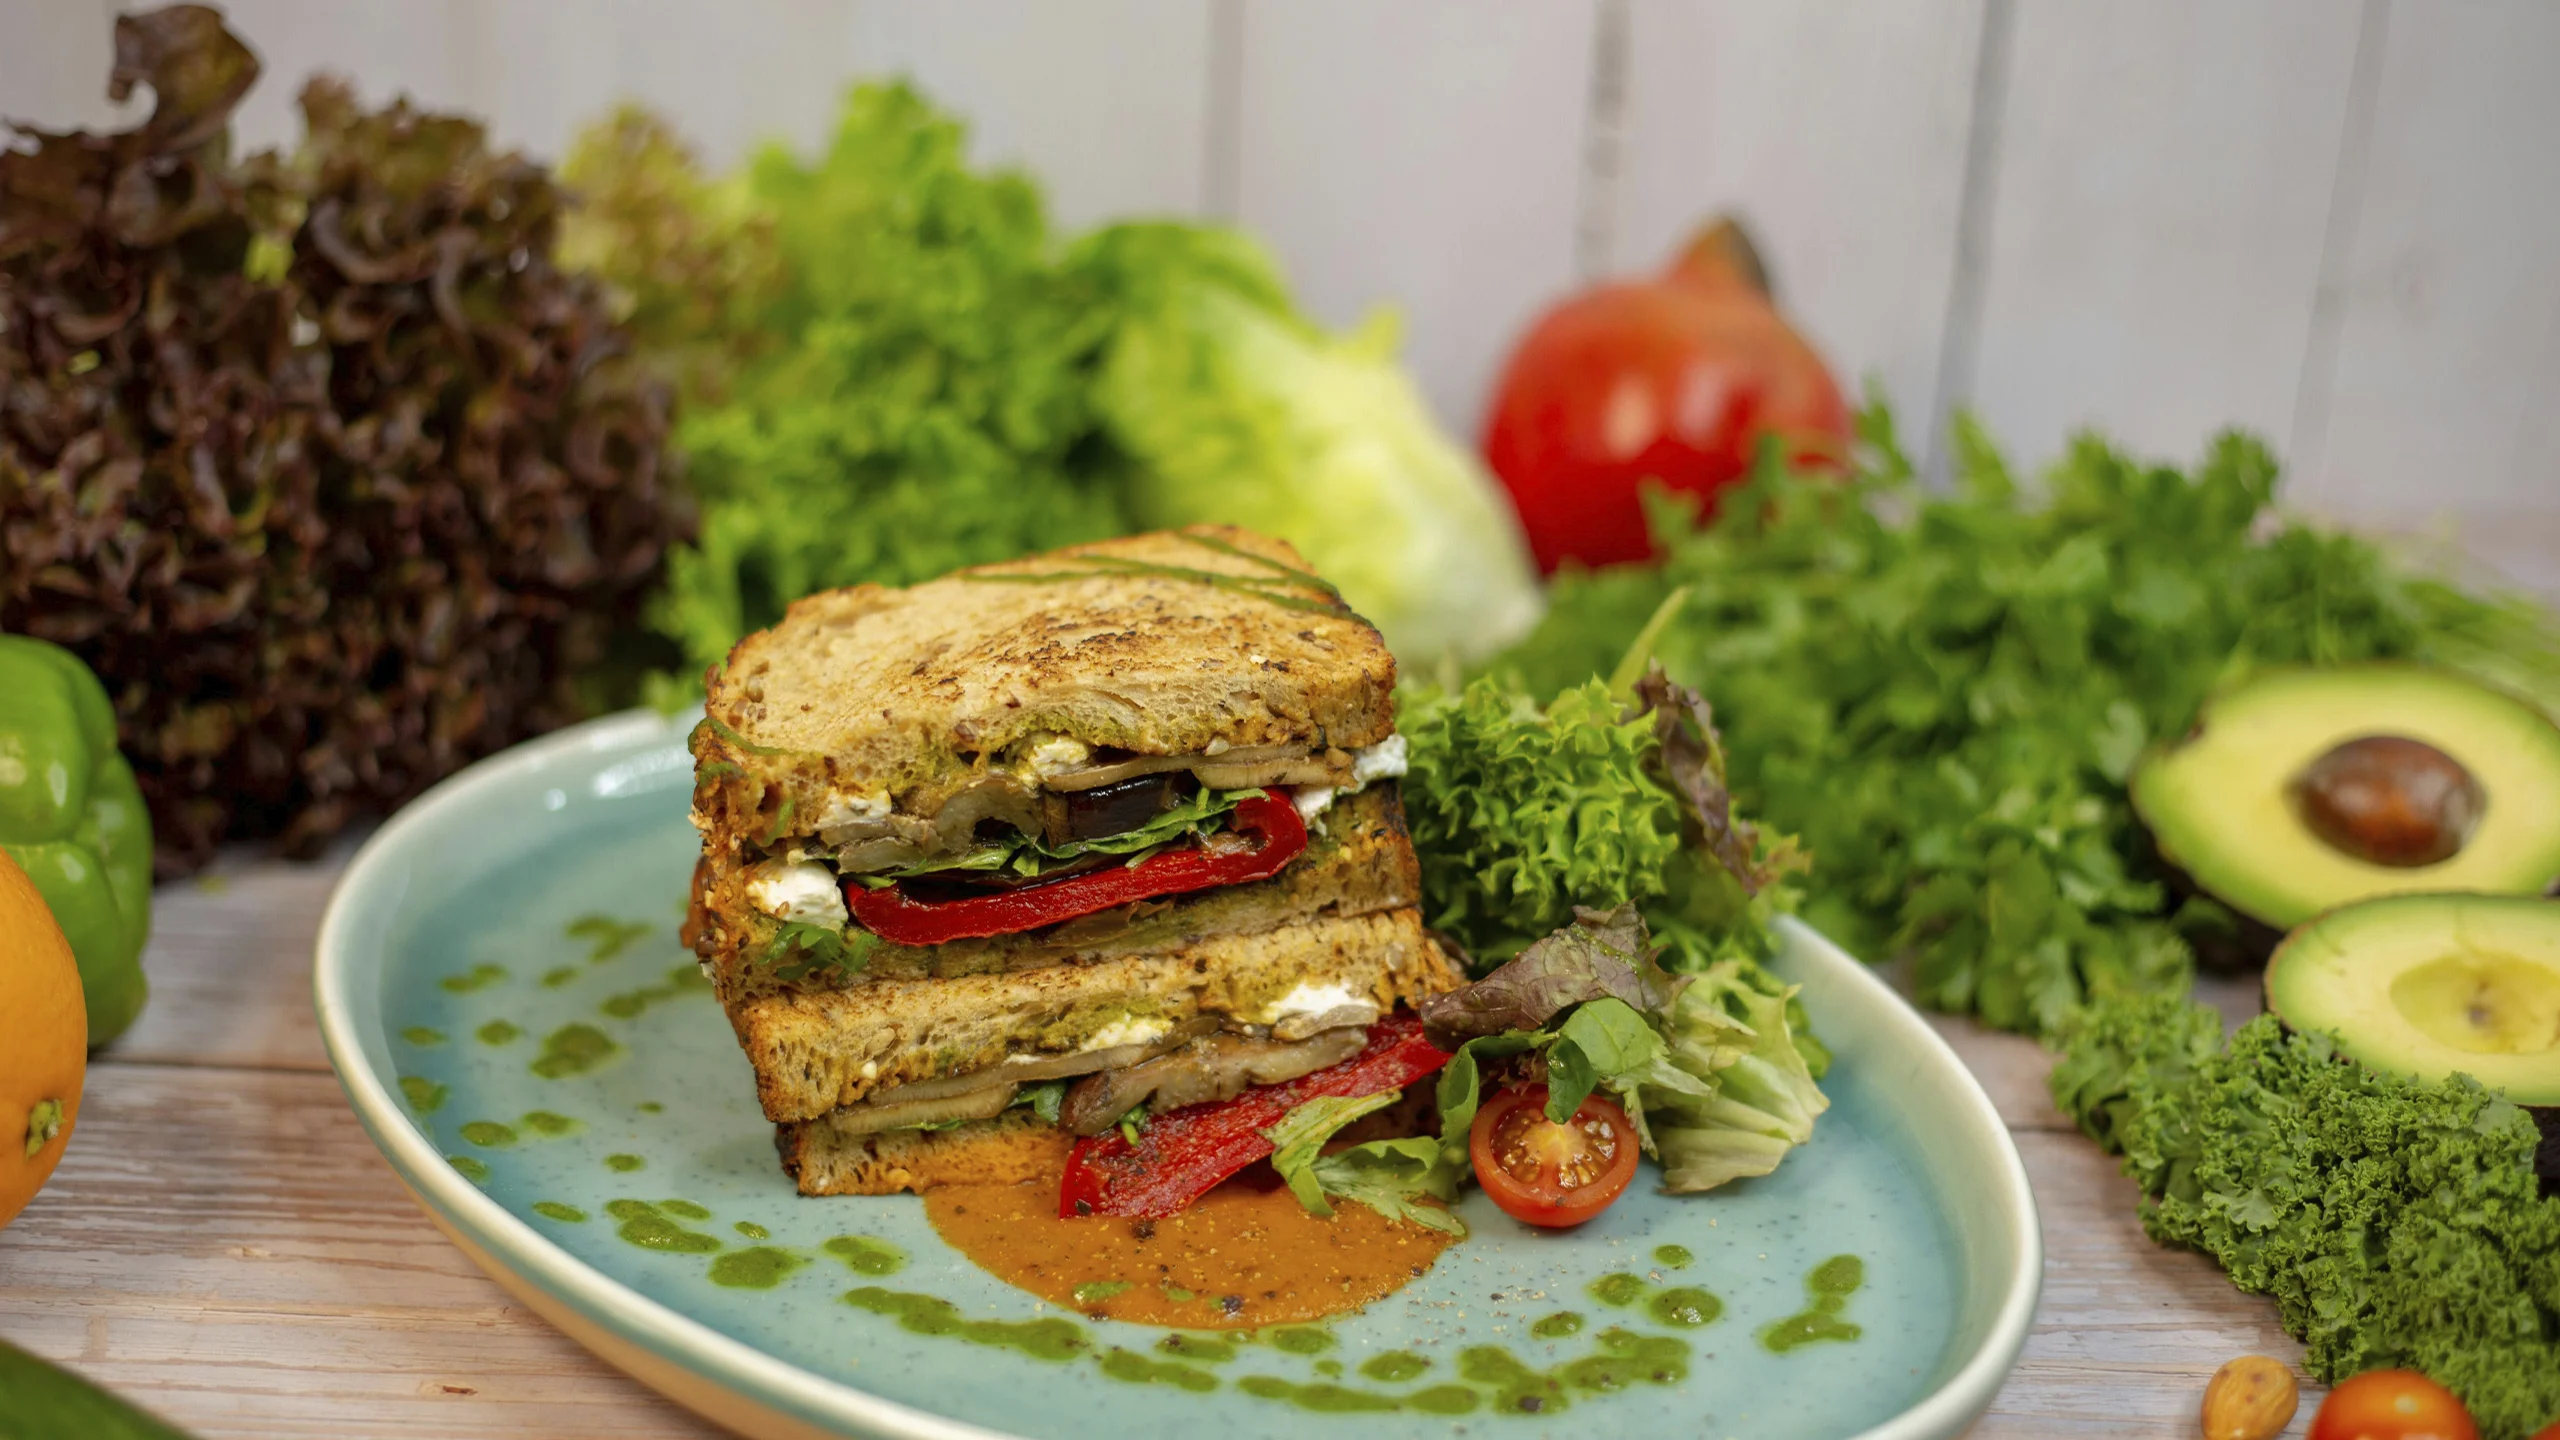 Día Mundial sin carne: 3 recetas de sándwiches veganos exquisitos